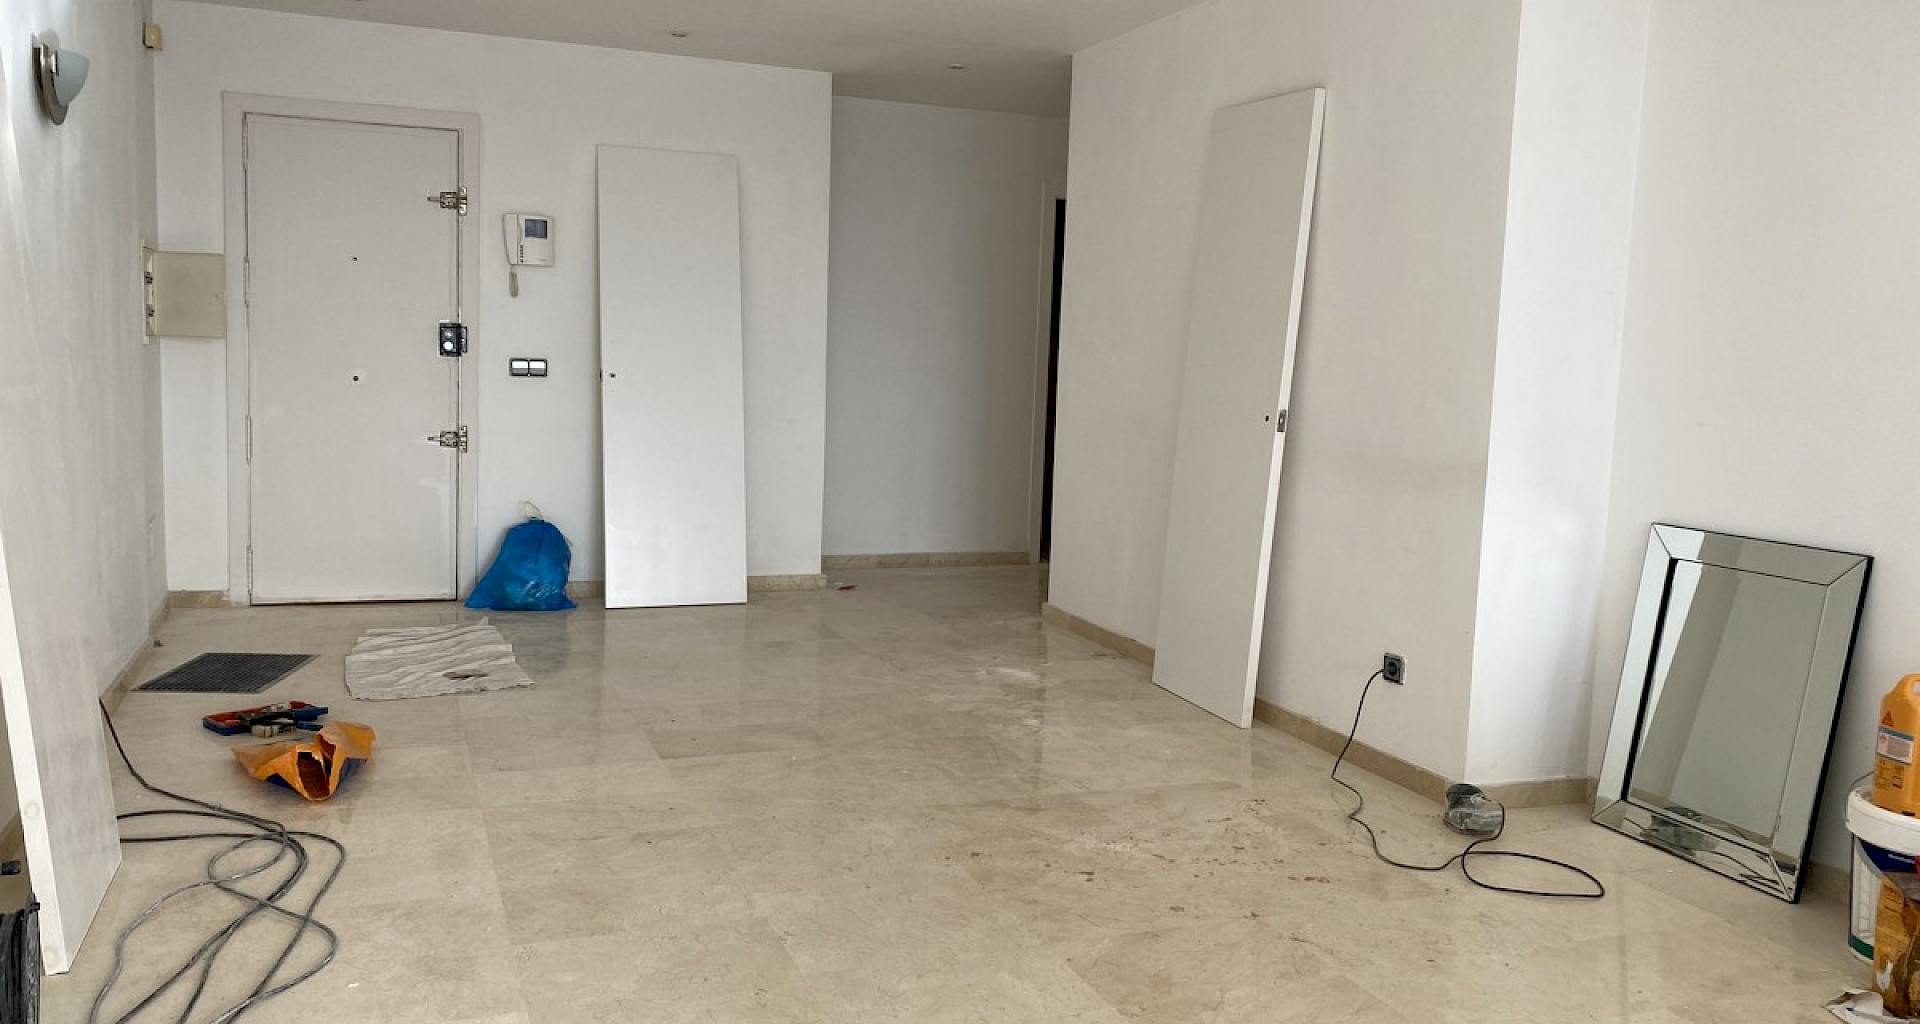 KROHN & LUEDEMANN Apartamento en primera línea de mar en Santa Ponsa para comprar y terminar la obra 